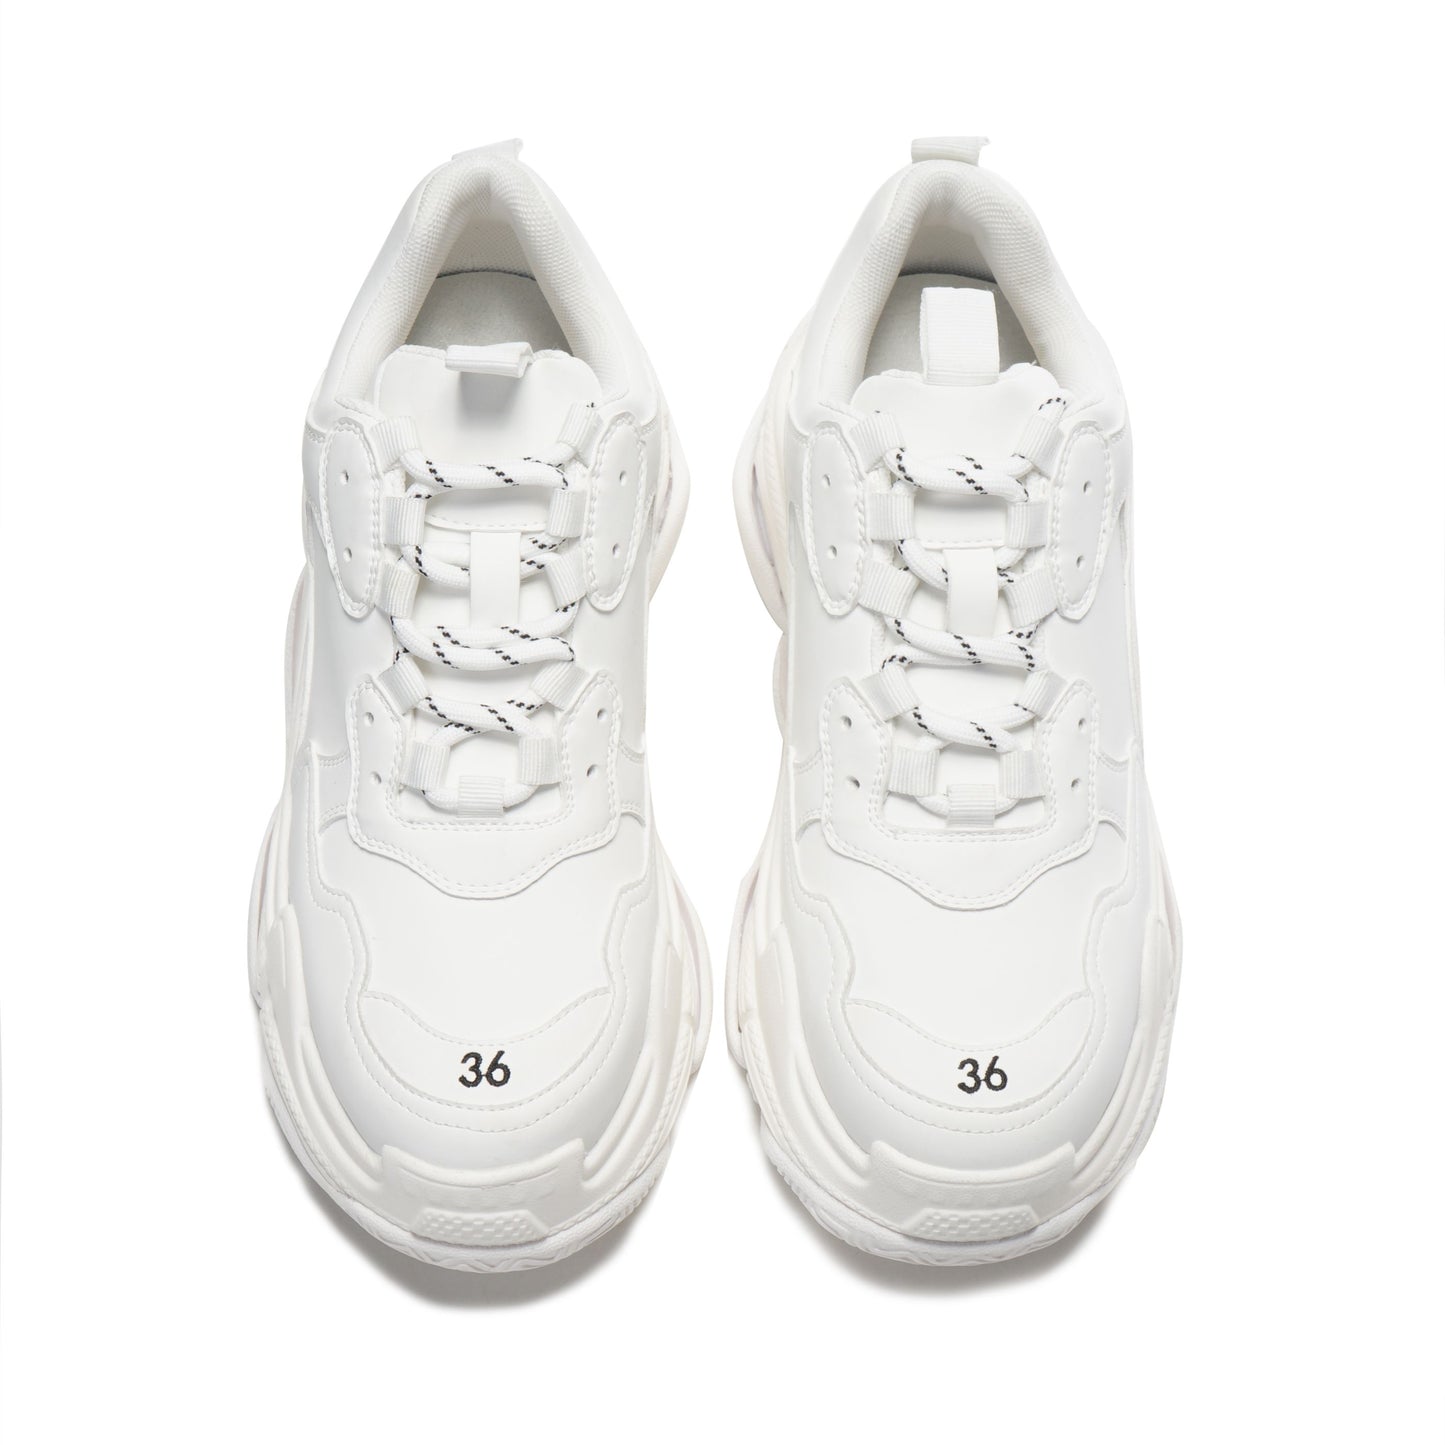 DK1614 Izibeli Sneaker white soft leather sneaker UGG